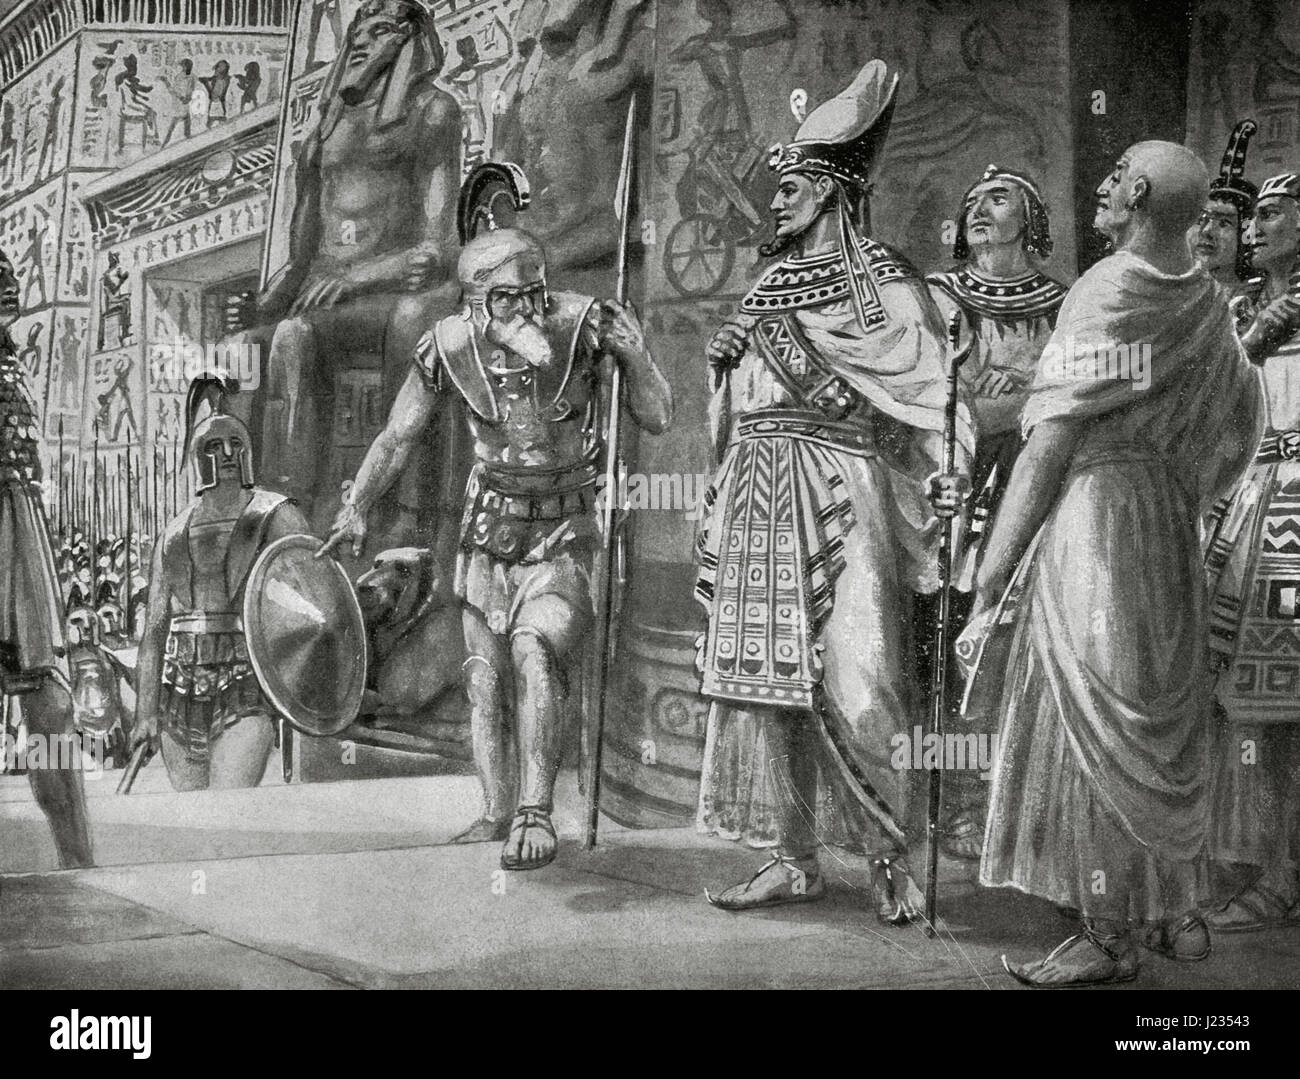 Agesliaus II (ca. 444-c. 360 v. Chr.), König von Sparta (400-360 v. Chr.), und die allgemeine Athener Chabrias mit Söldnern kommen Hilfe König Nektanebos I und sein Regent Teos gegen die Perser in 361 v. Chr. Gravur. Stockfoto